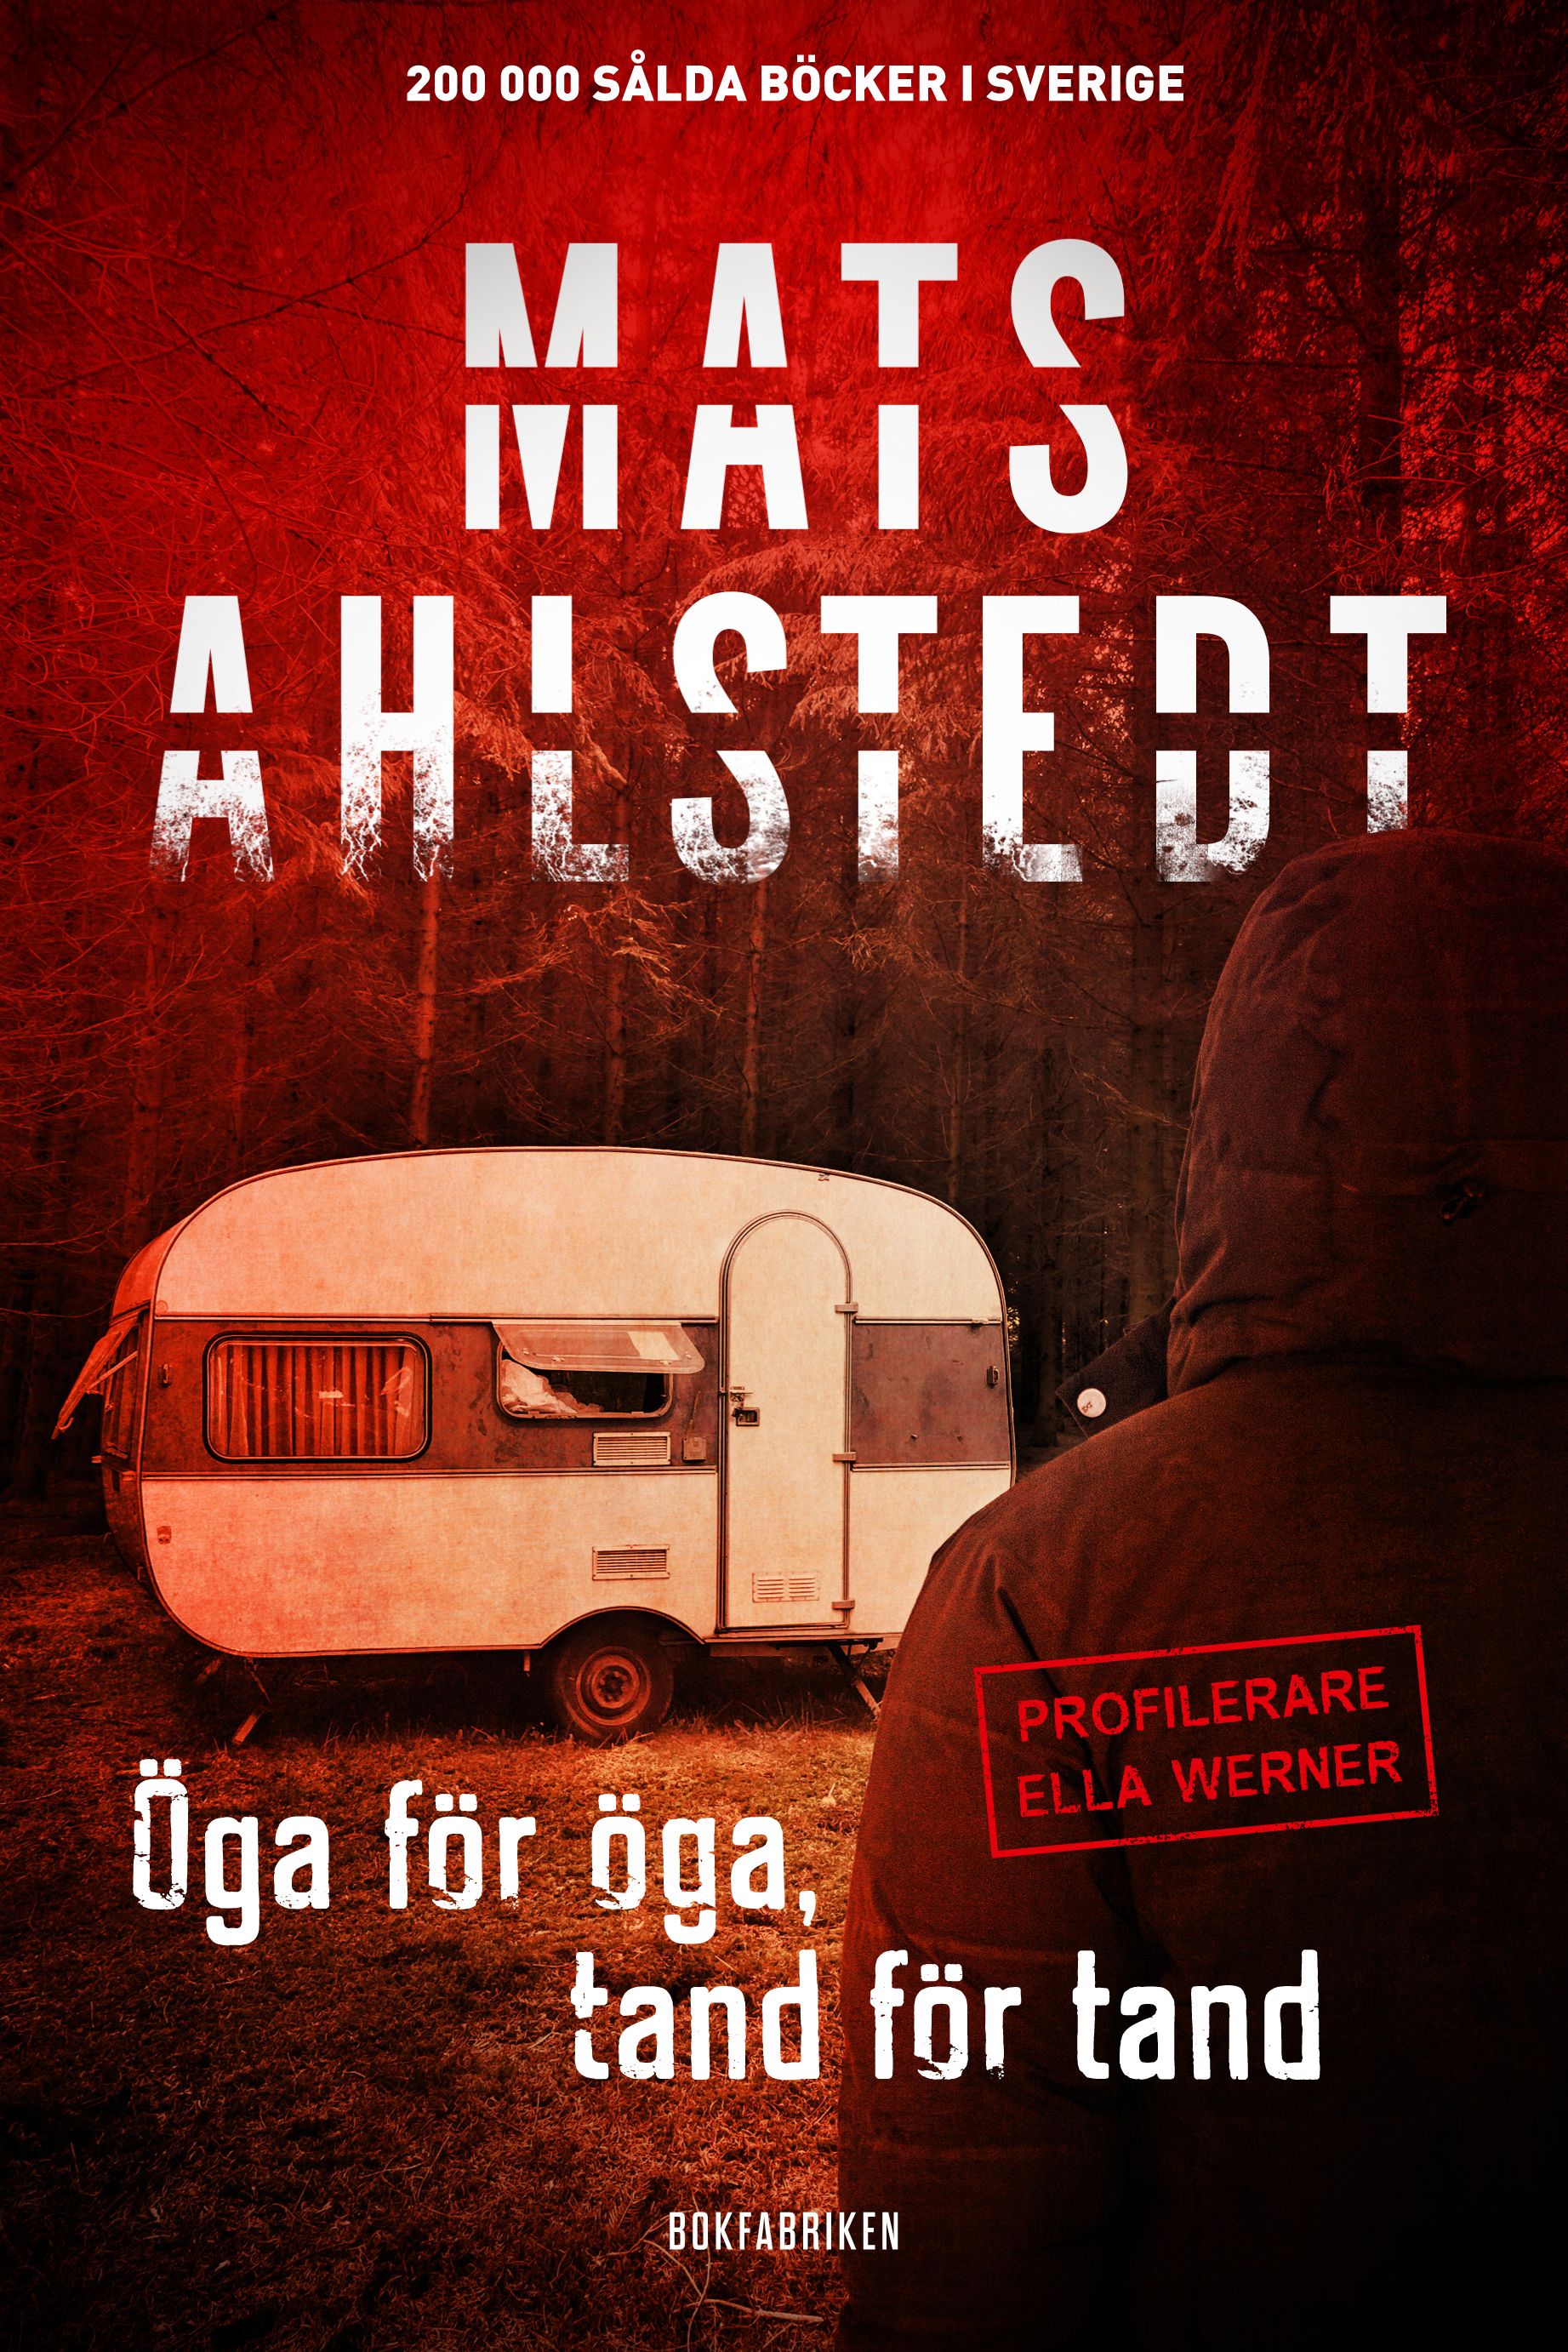 Öga för öga, tand för tand, e-bog af Mats Ahlstedt